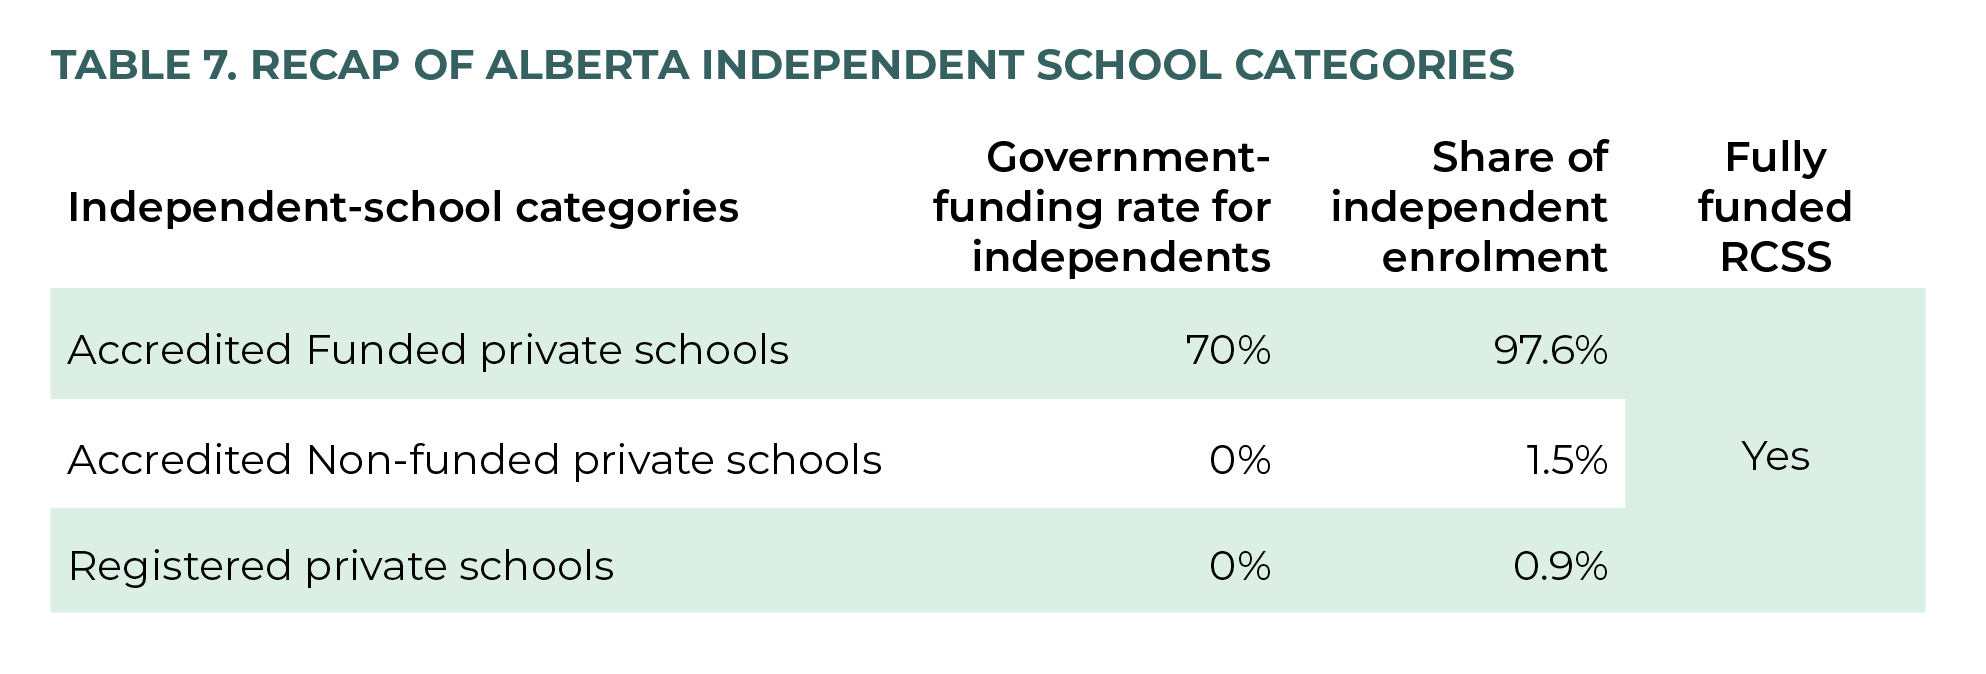 Table 7. Recap of Alberta independent-school categories